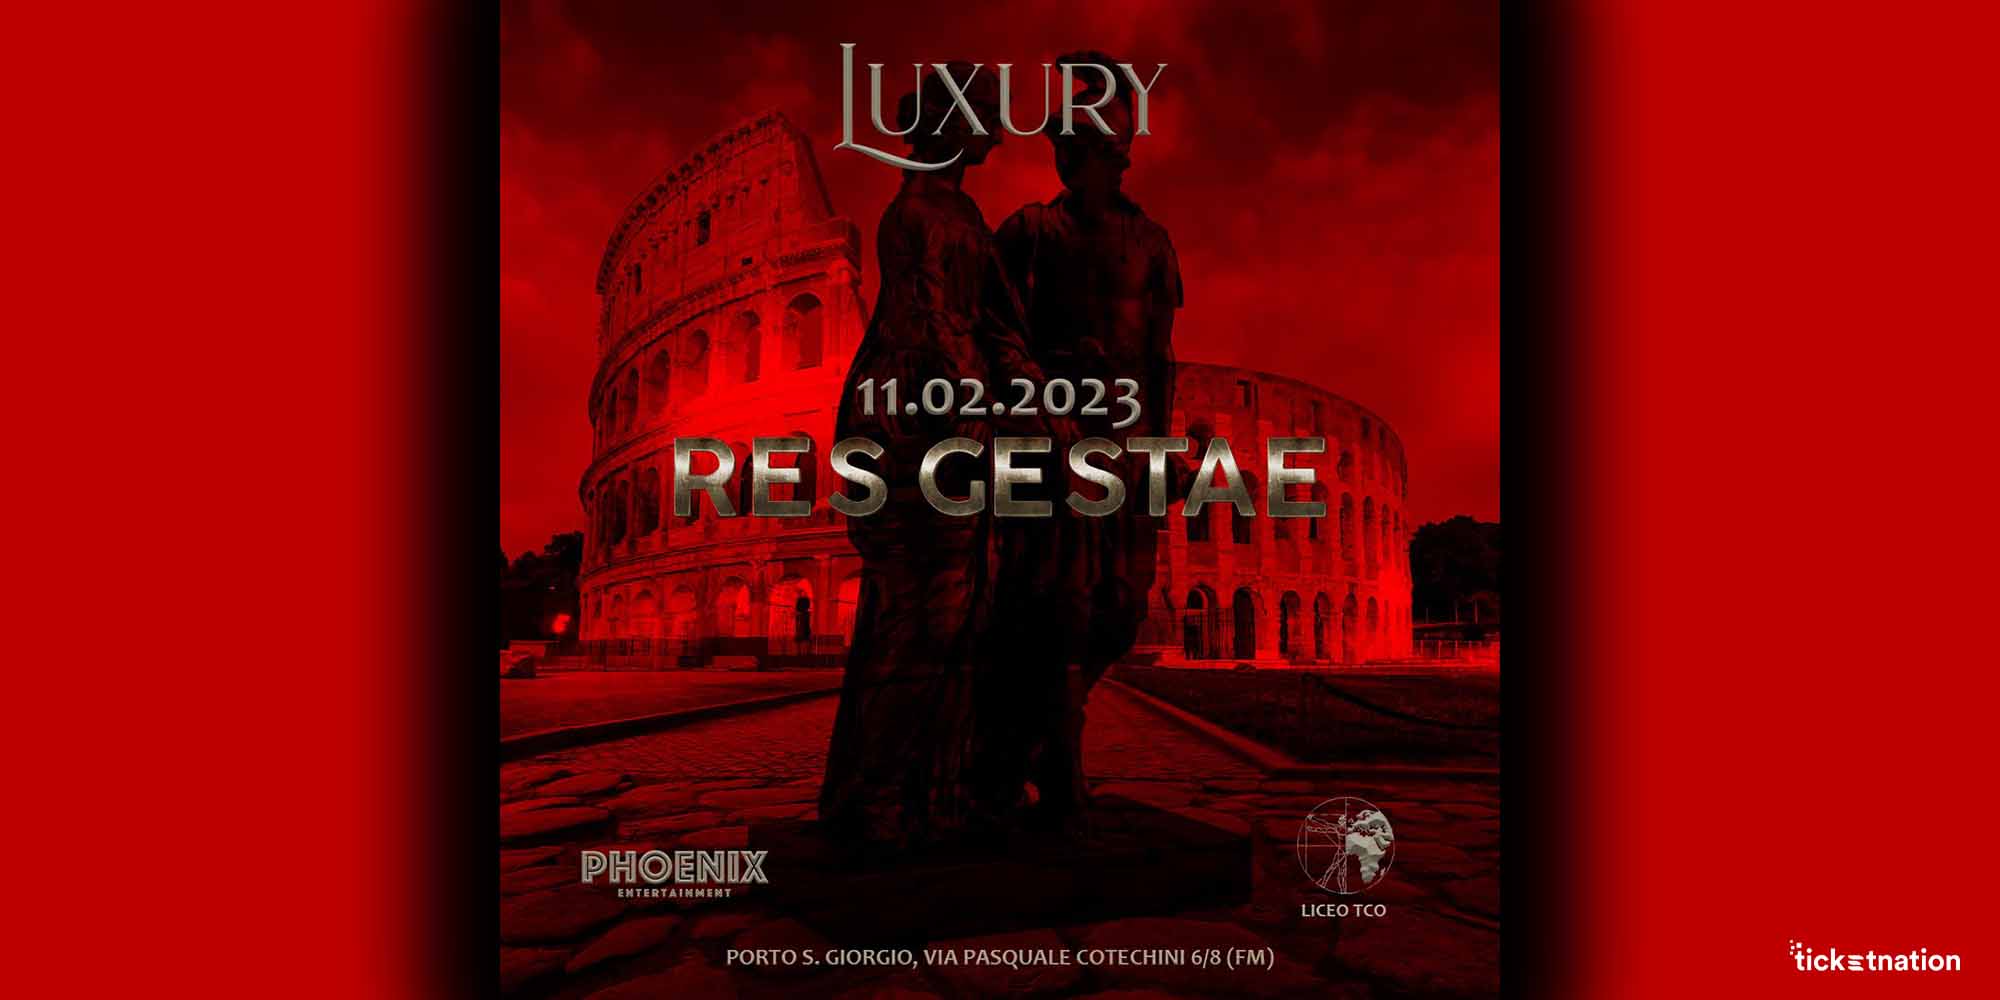 Luxury-11-02-2023